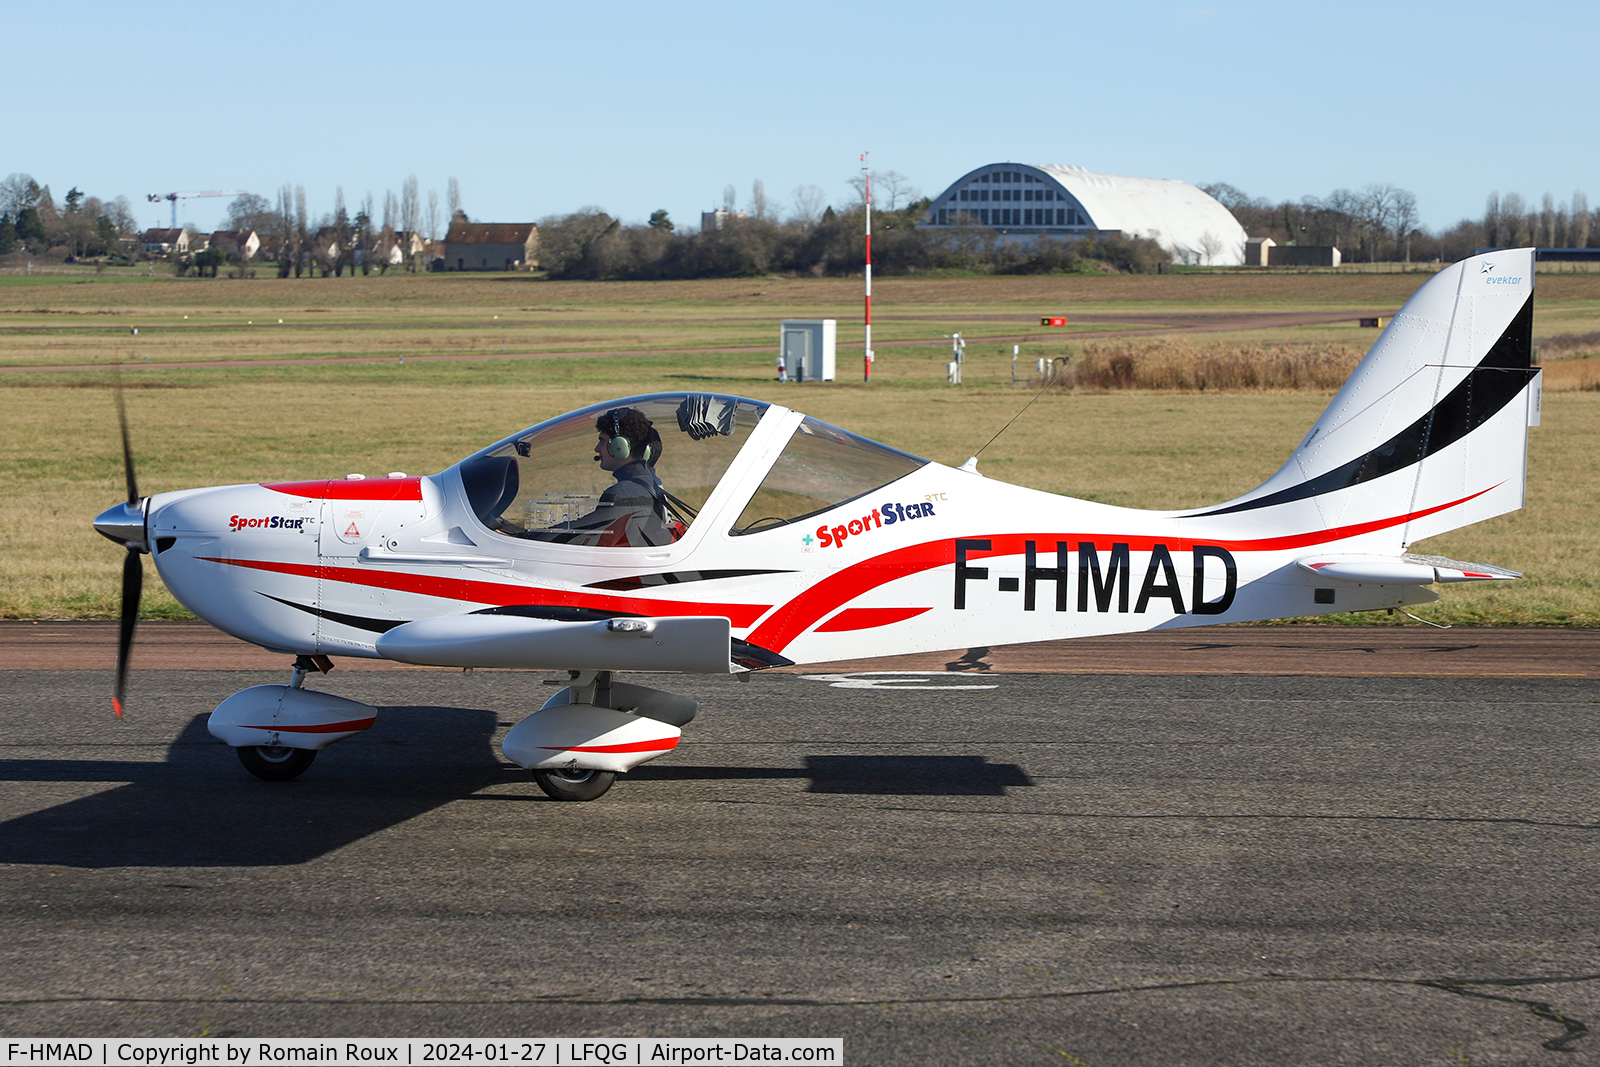 F-HMAD, 2014 Evektor-Aerotechnik SportStar RTC C/N 2014-1701, Taxiing